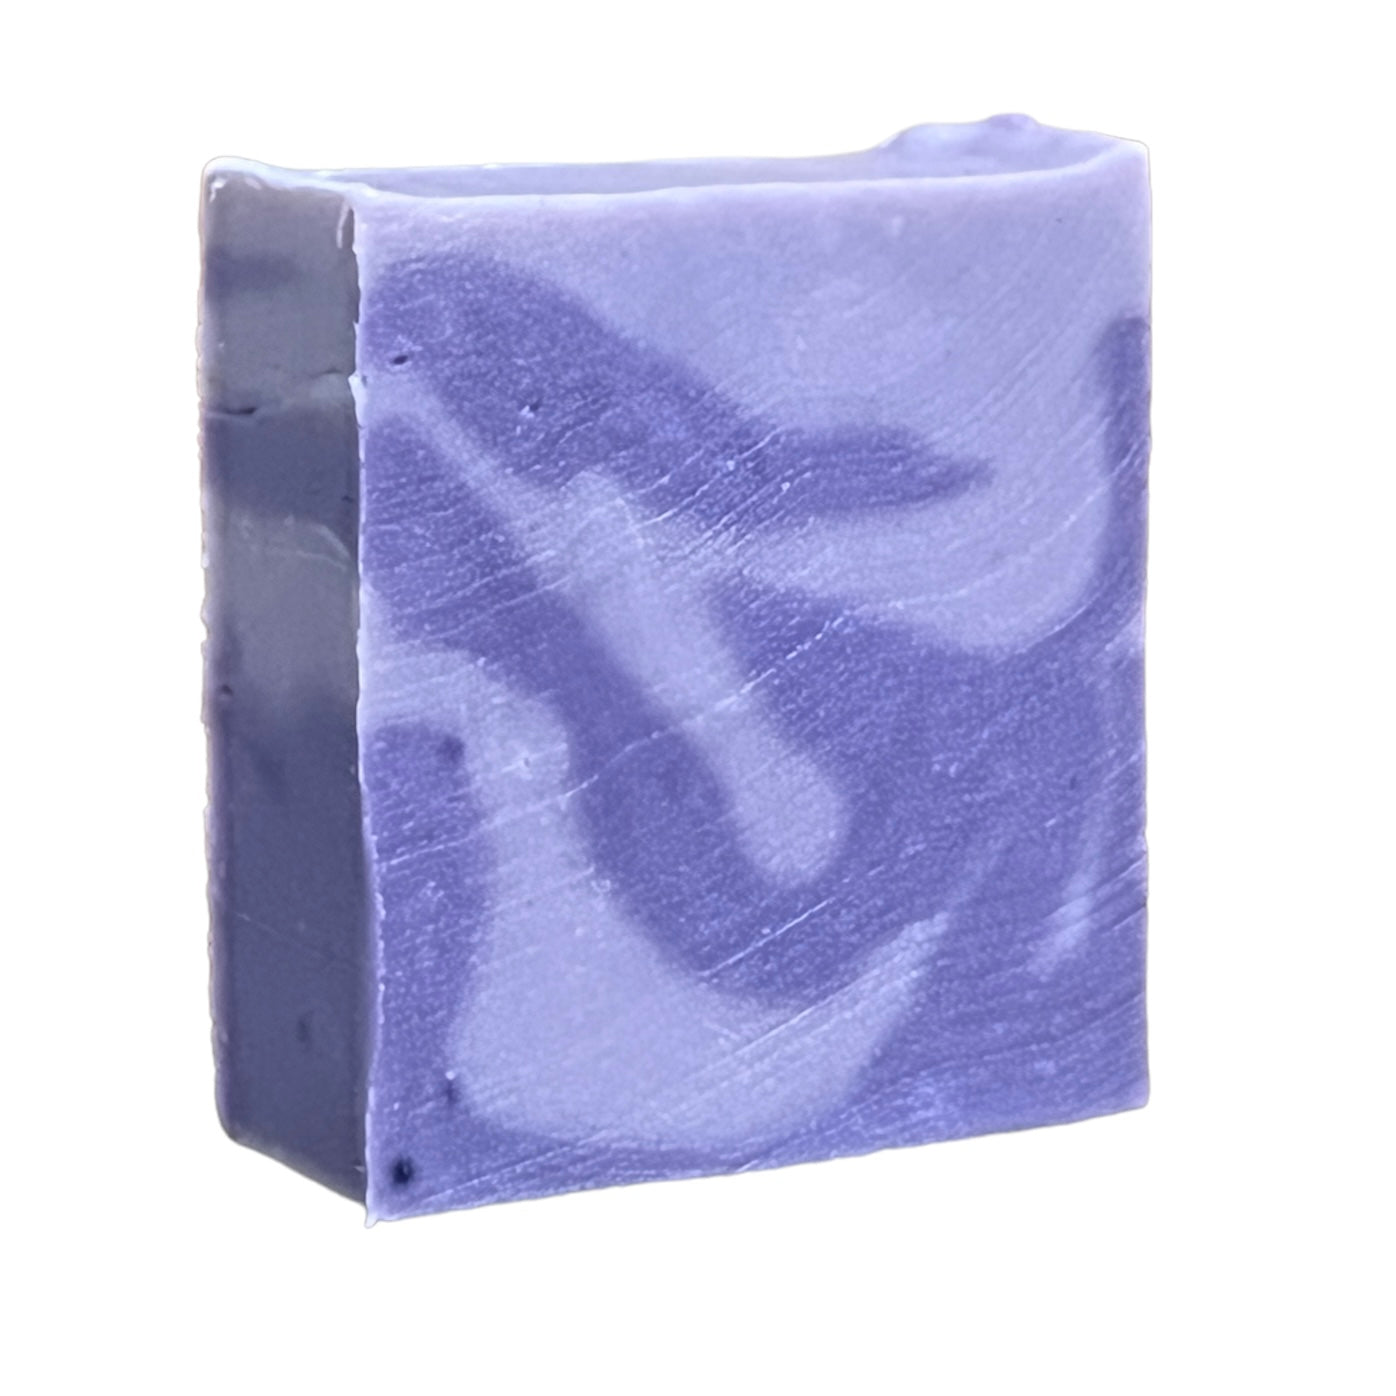 Purple Keratin Shampoo Bar